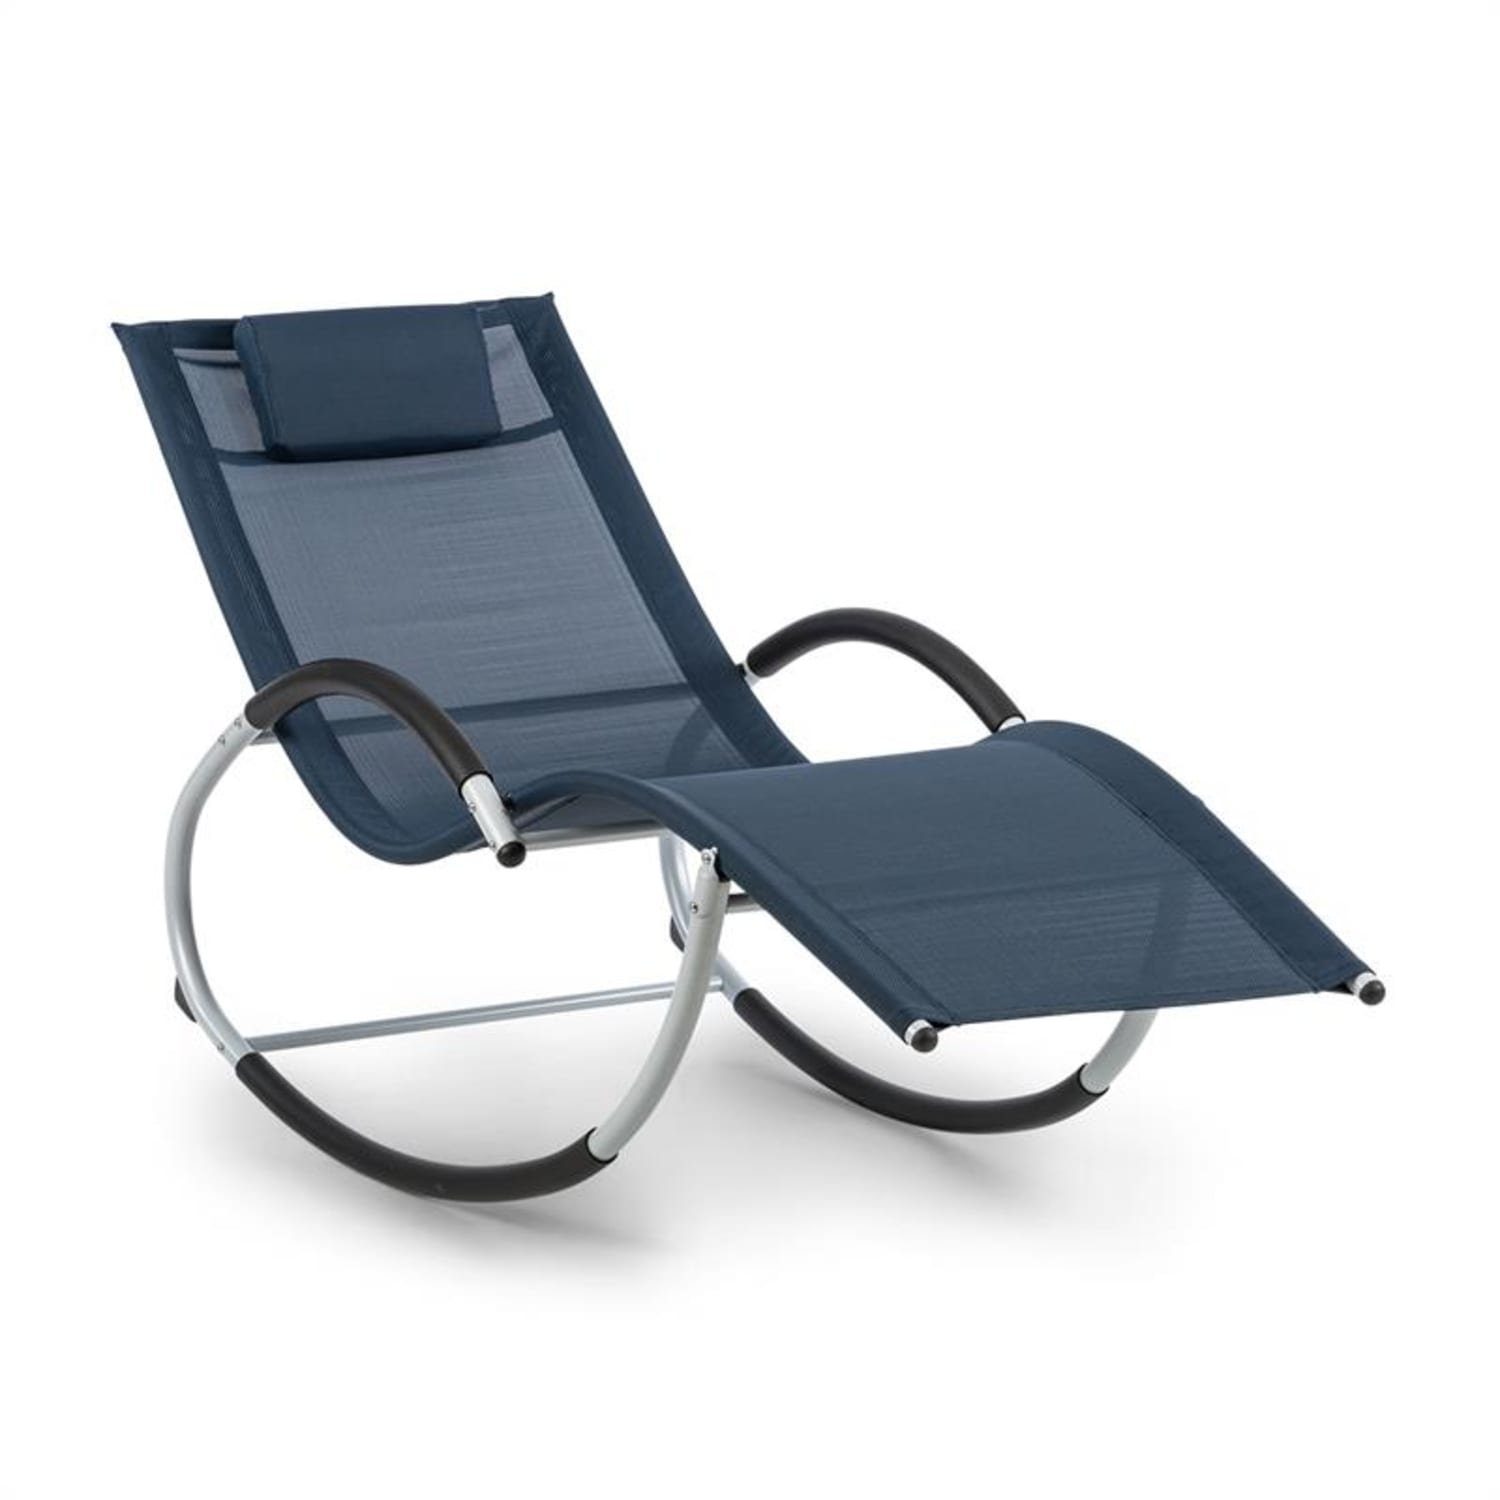 blum Gartenliege Westwood Rocking Chair Schaukelliege, Schwingeffekt, ergonomisch geformte Gartenliege